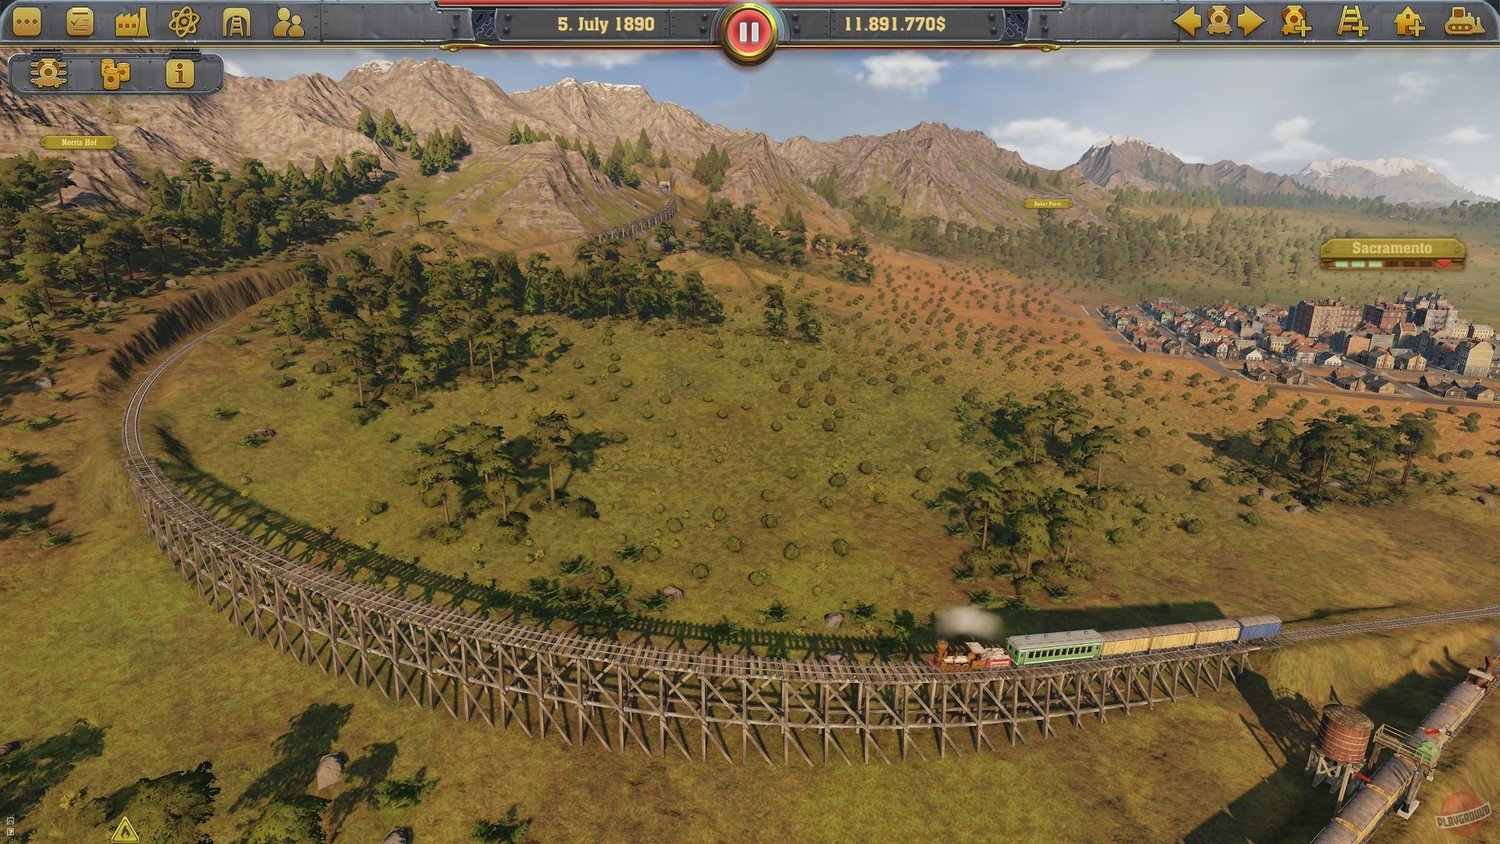 Скриншот 2 к игре Railway Empire Complete Collection v.1.14.0.27219 [GOG] (2018) скачать торрент Лицензия